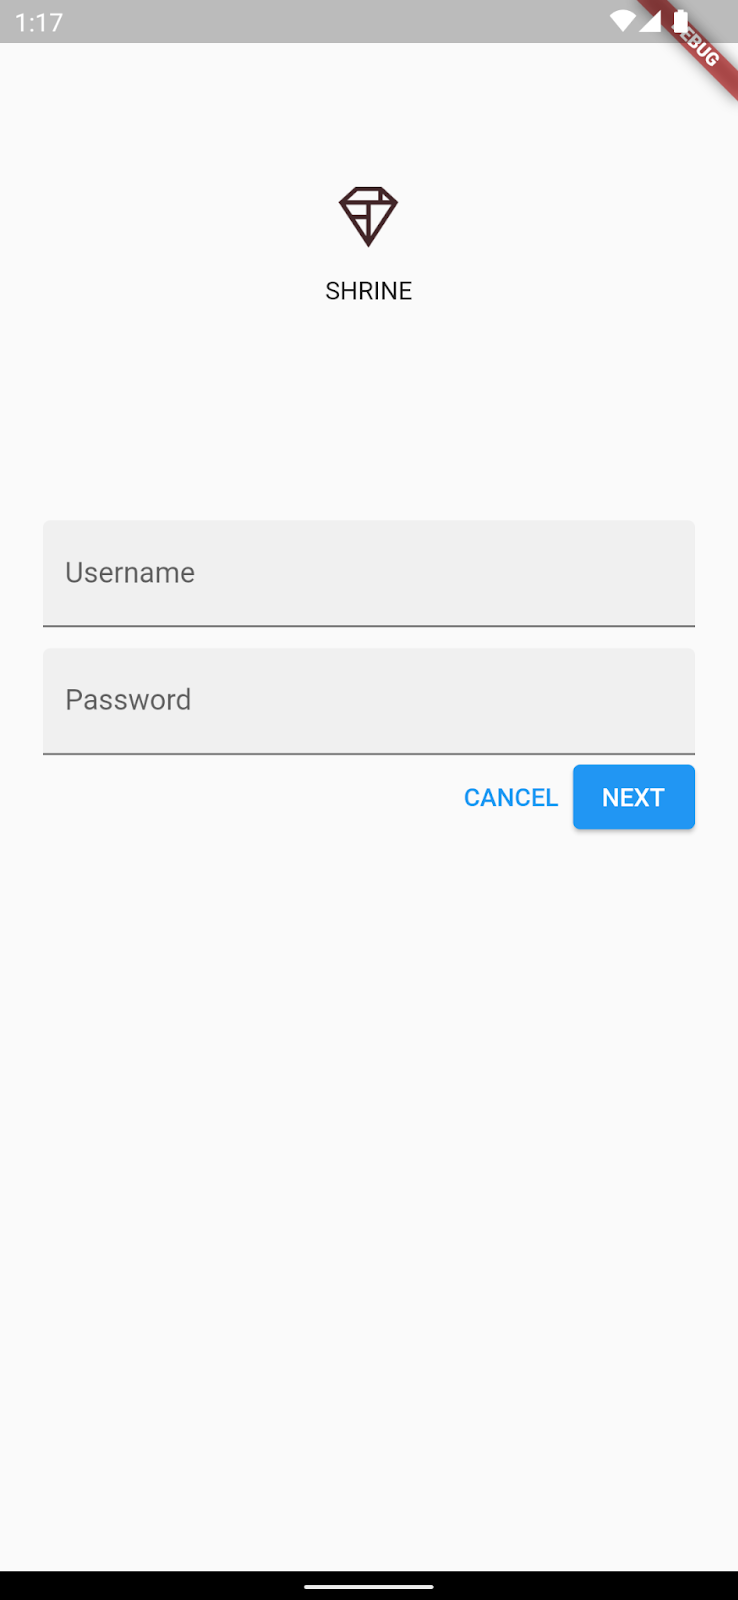 ユーザー名とパスワードのフィールド、キャンセル ボタン、「次へ」ボタンを含む神社のロゴ